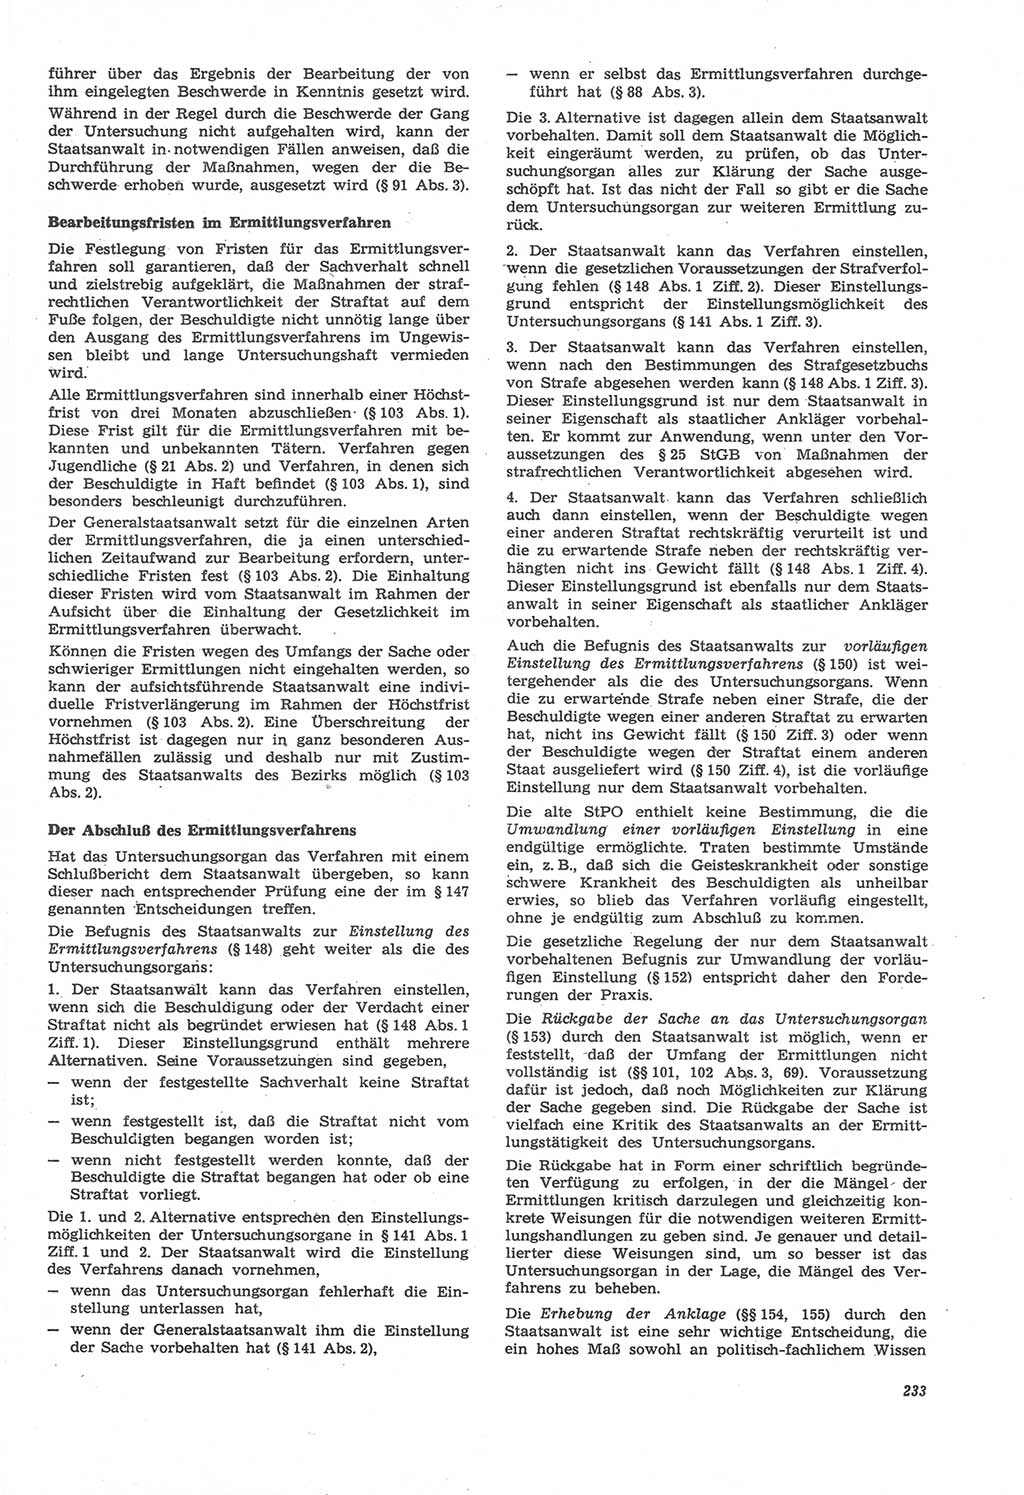 Neue Justiz (NJ), Zeitschrift für Recht und Rechtswissenschaft [Deutsche Demokratische Republik (DDR)], 22. Jahrgang 1968, Seite 233 (NJ DDR 1968, S. 233)